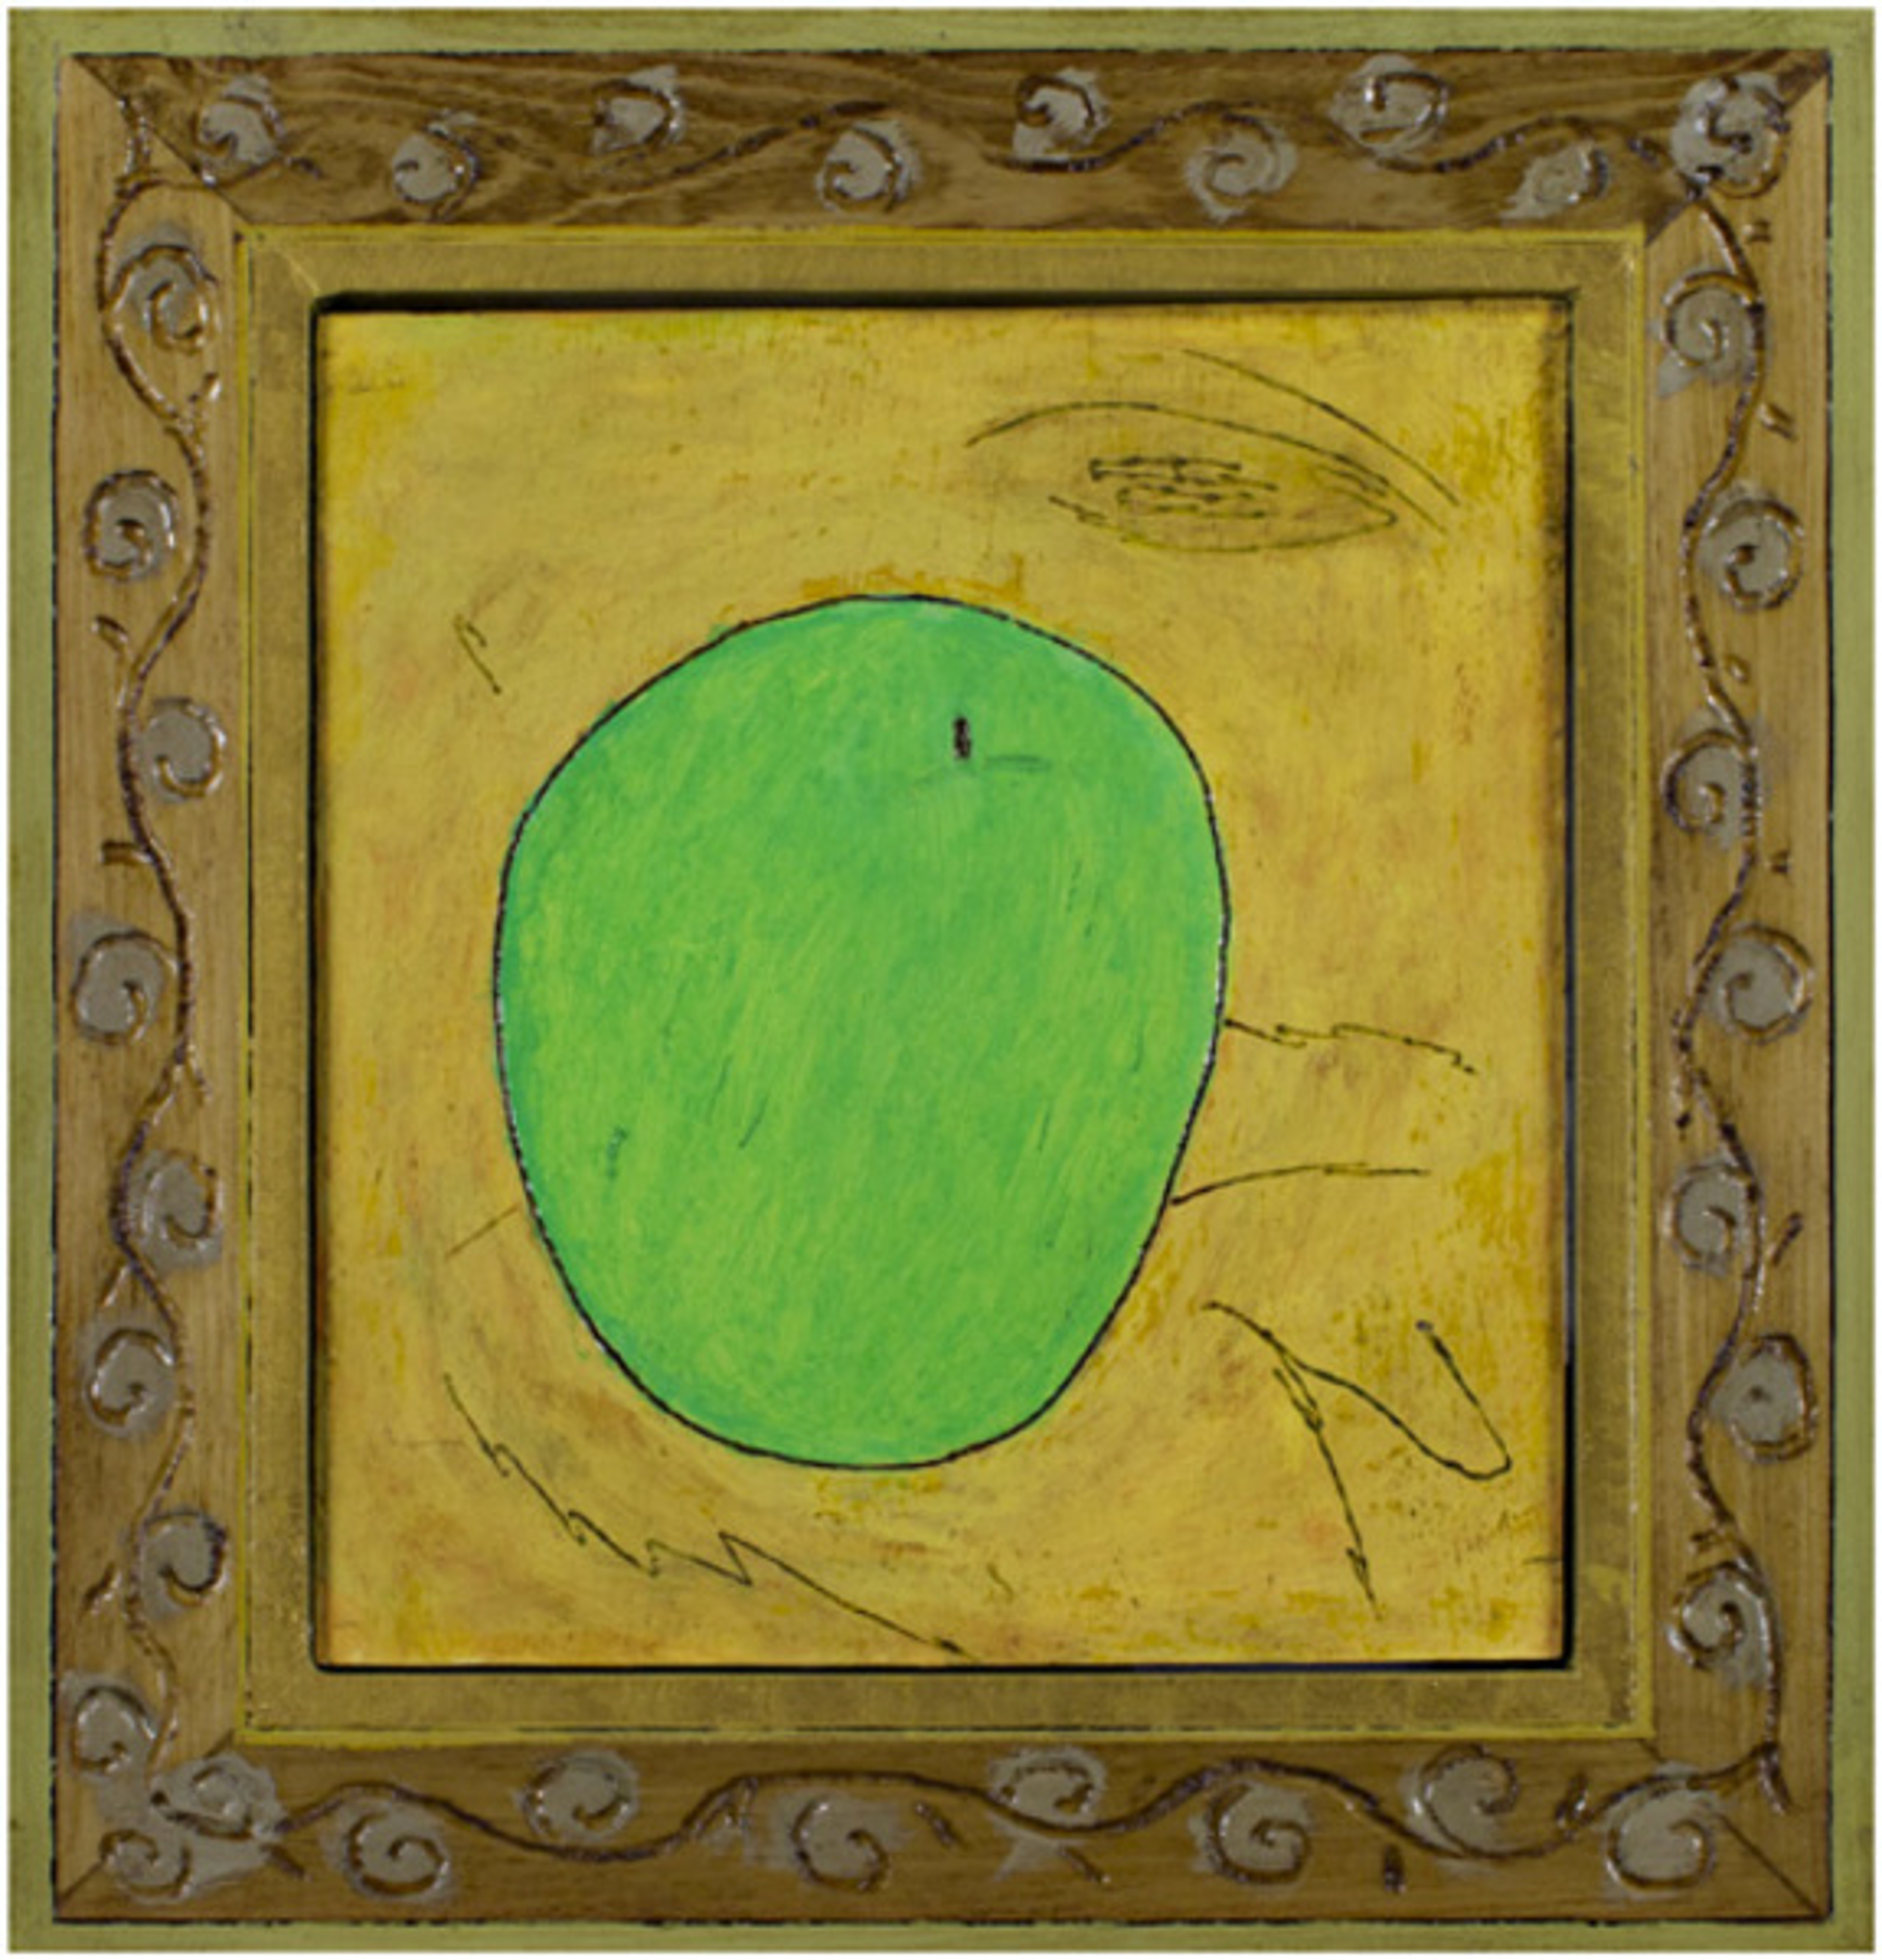 Green Apple by Robert Richter